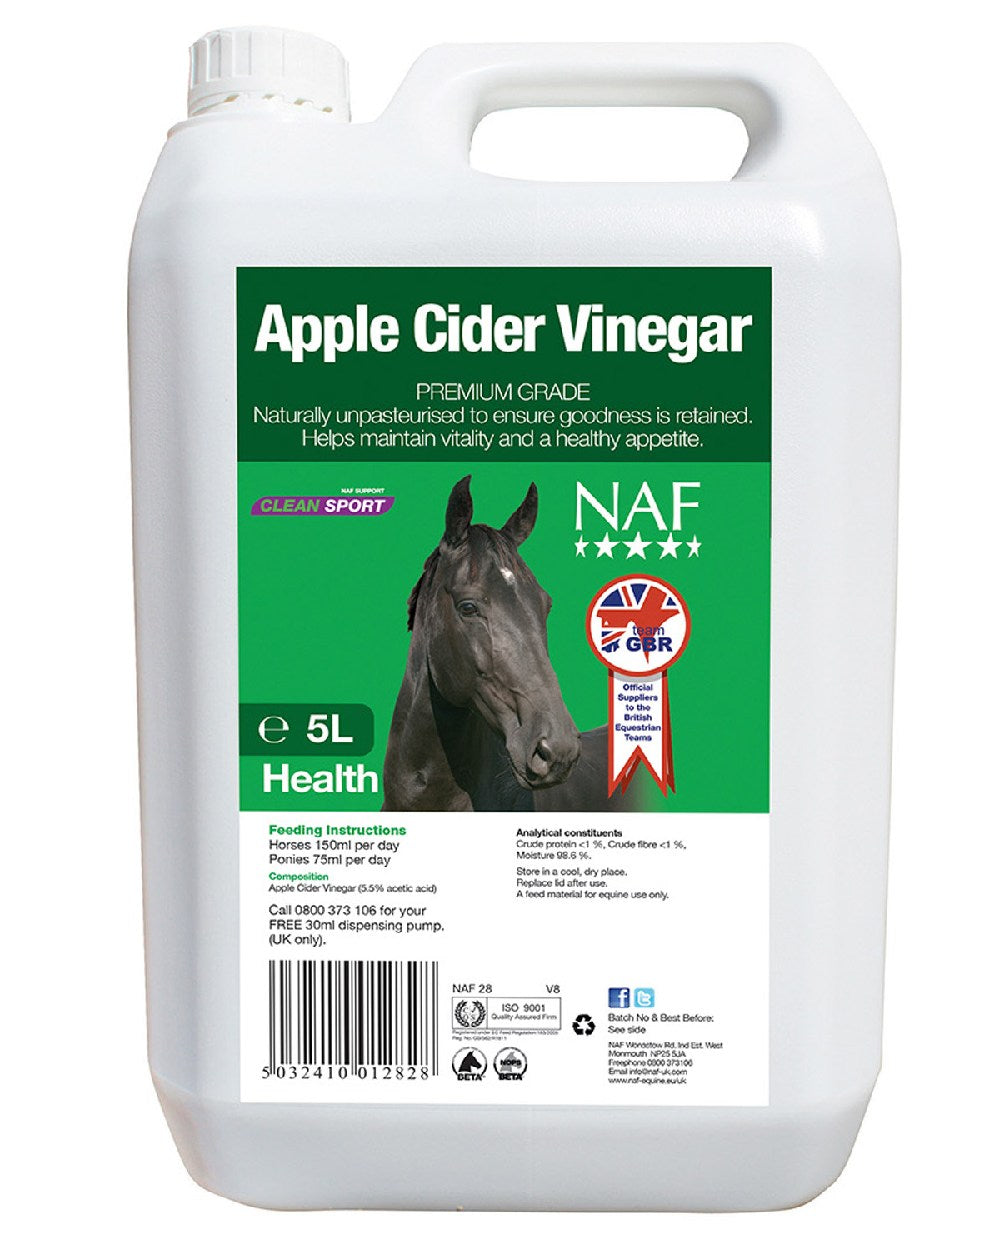 NAF Apple Cider Vinegar 5l on white background